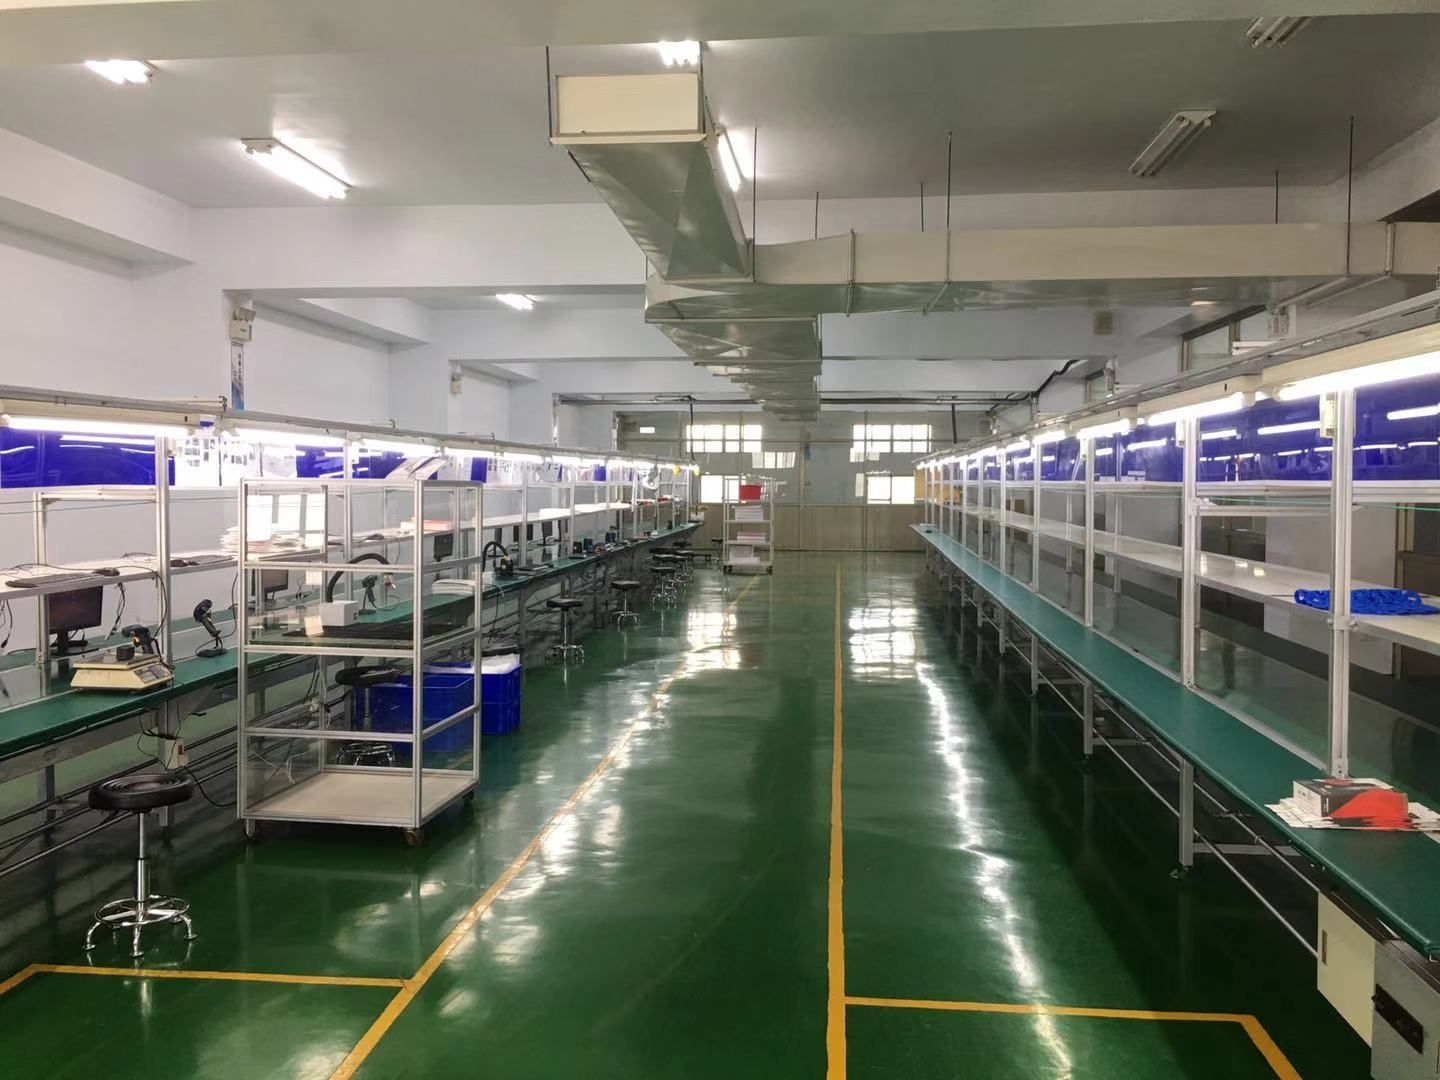 Sistema Foreshot Dayuan Factory e linhas de montagem de acessórios